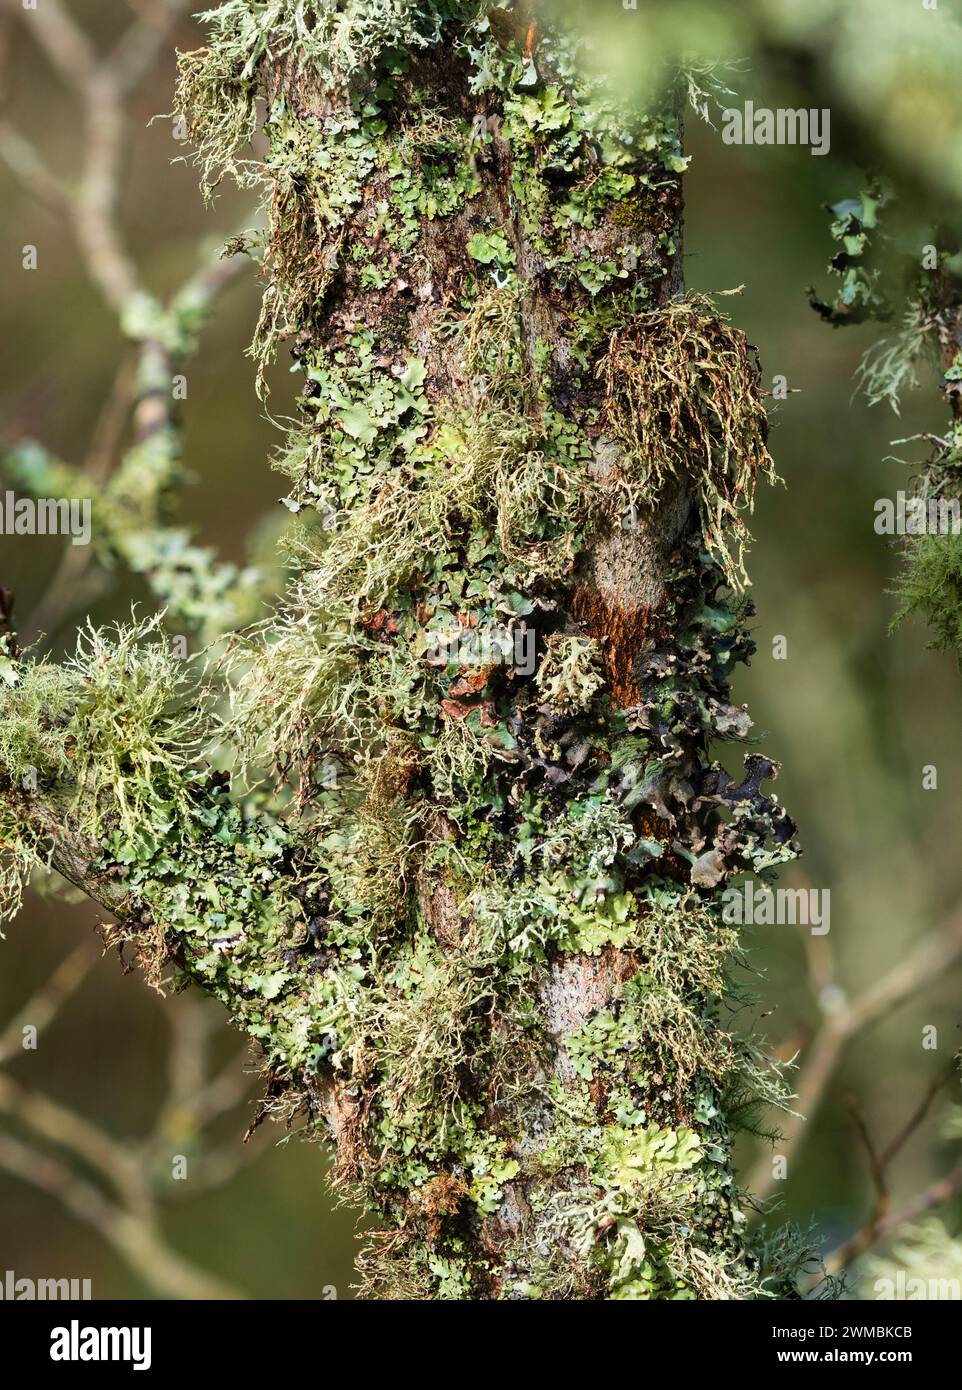 Il mix densamente confezionato di licheni fogliosi e fruticosi fa risaltare la corteccia fessurata della Styrax hemslyana Foto Stock